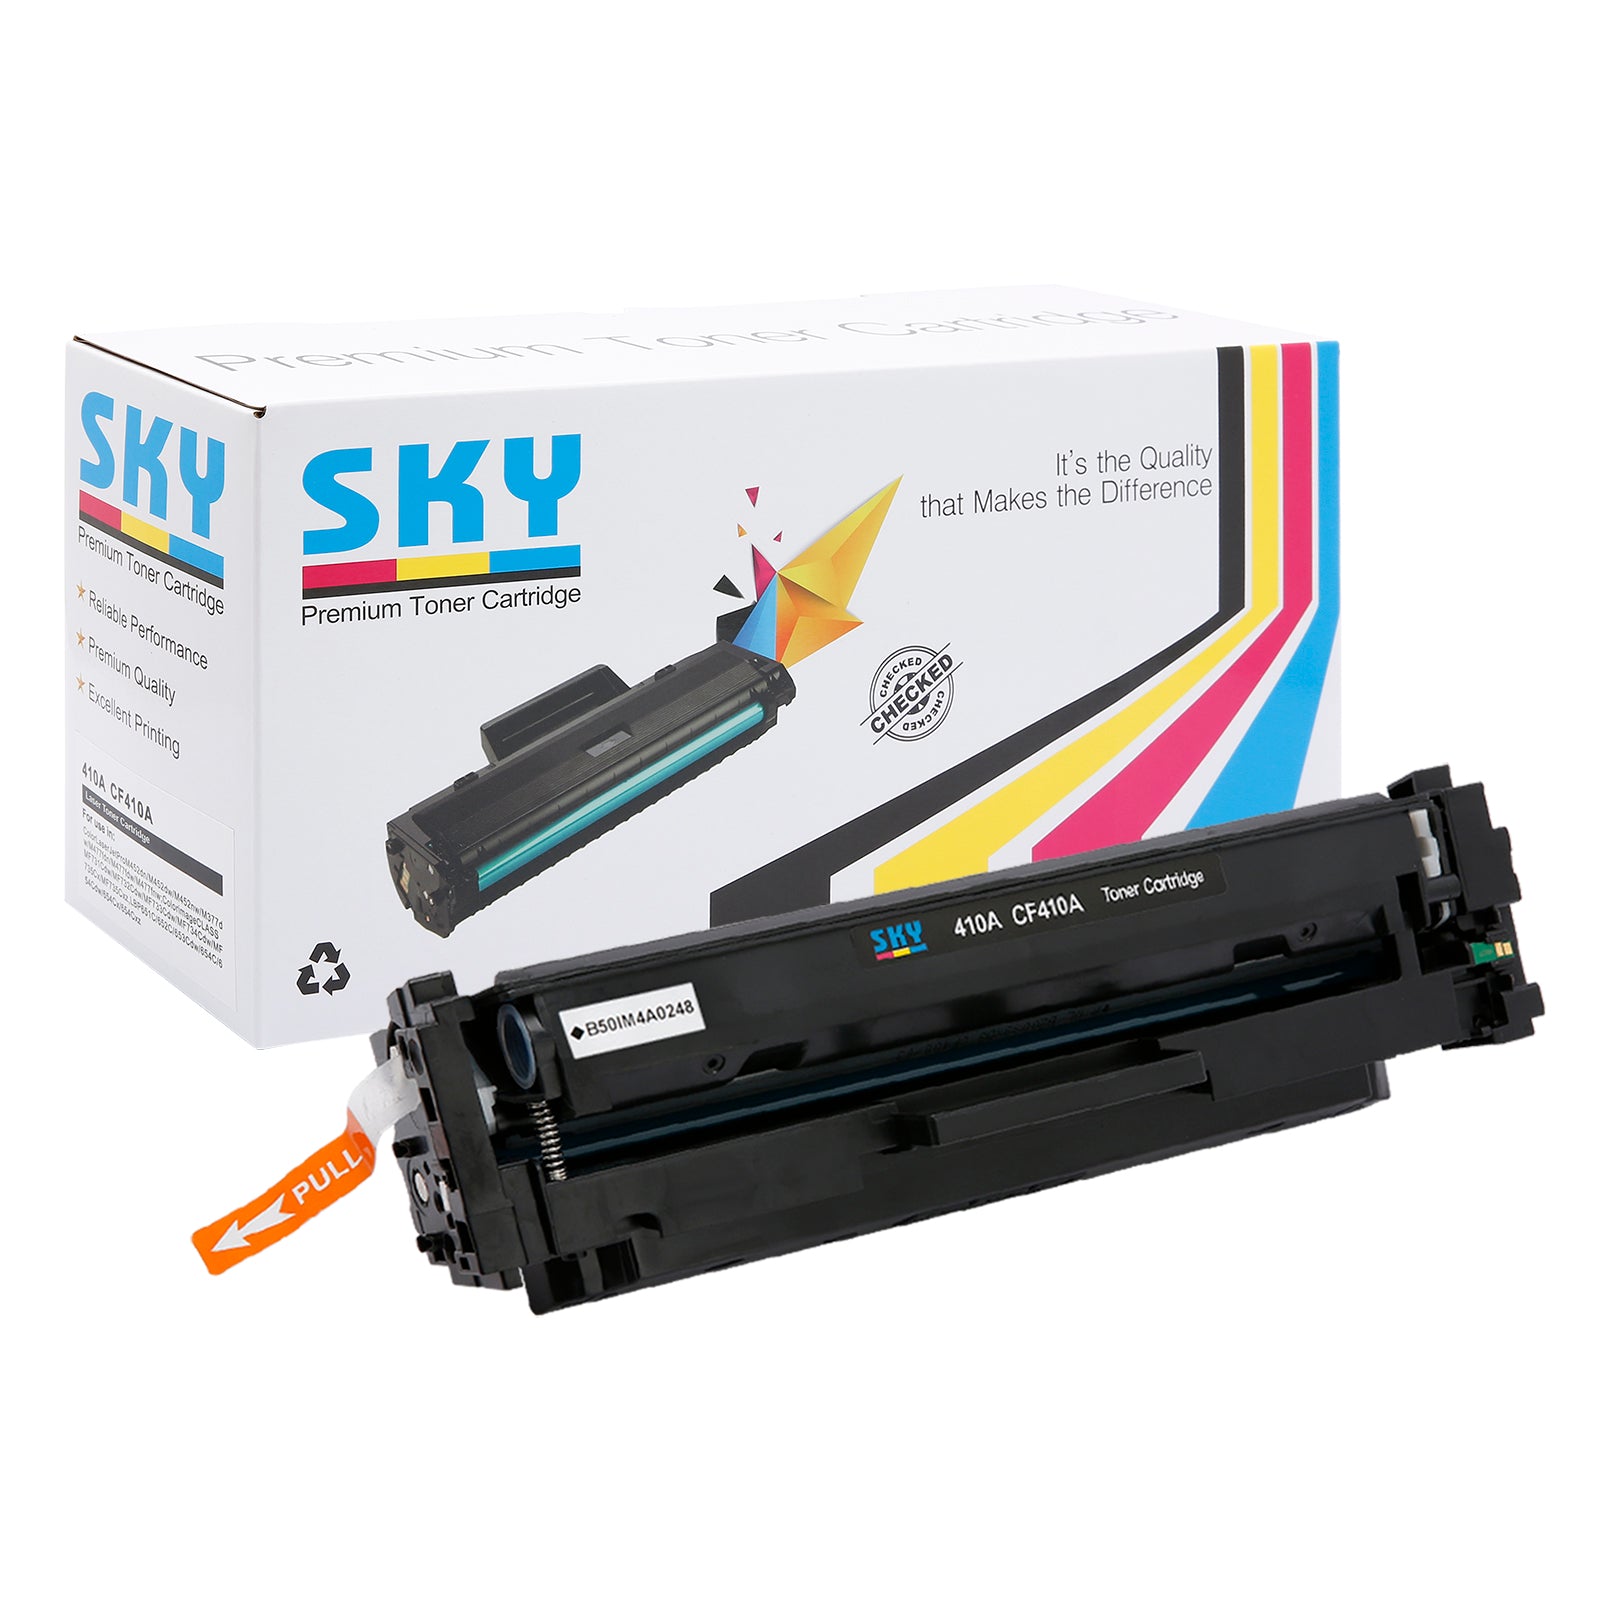 SKY  410A Compatible Toner Cartridges for HP Colour LaserJet Pro M452 M477 and M377